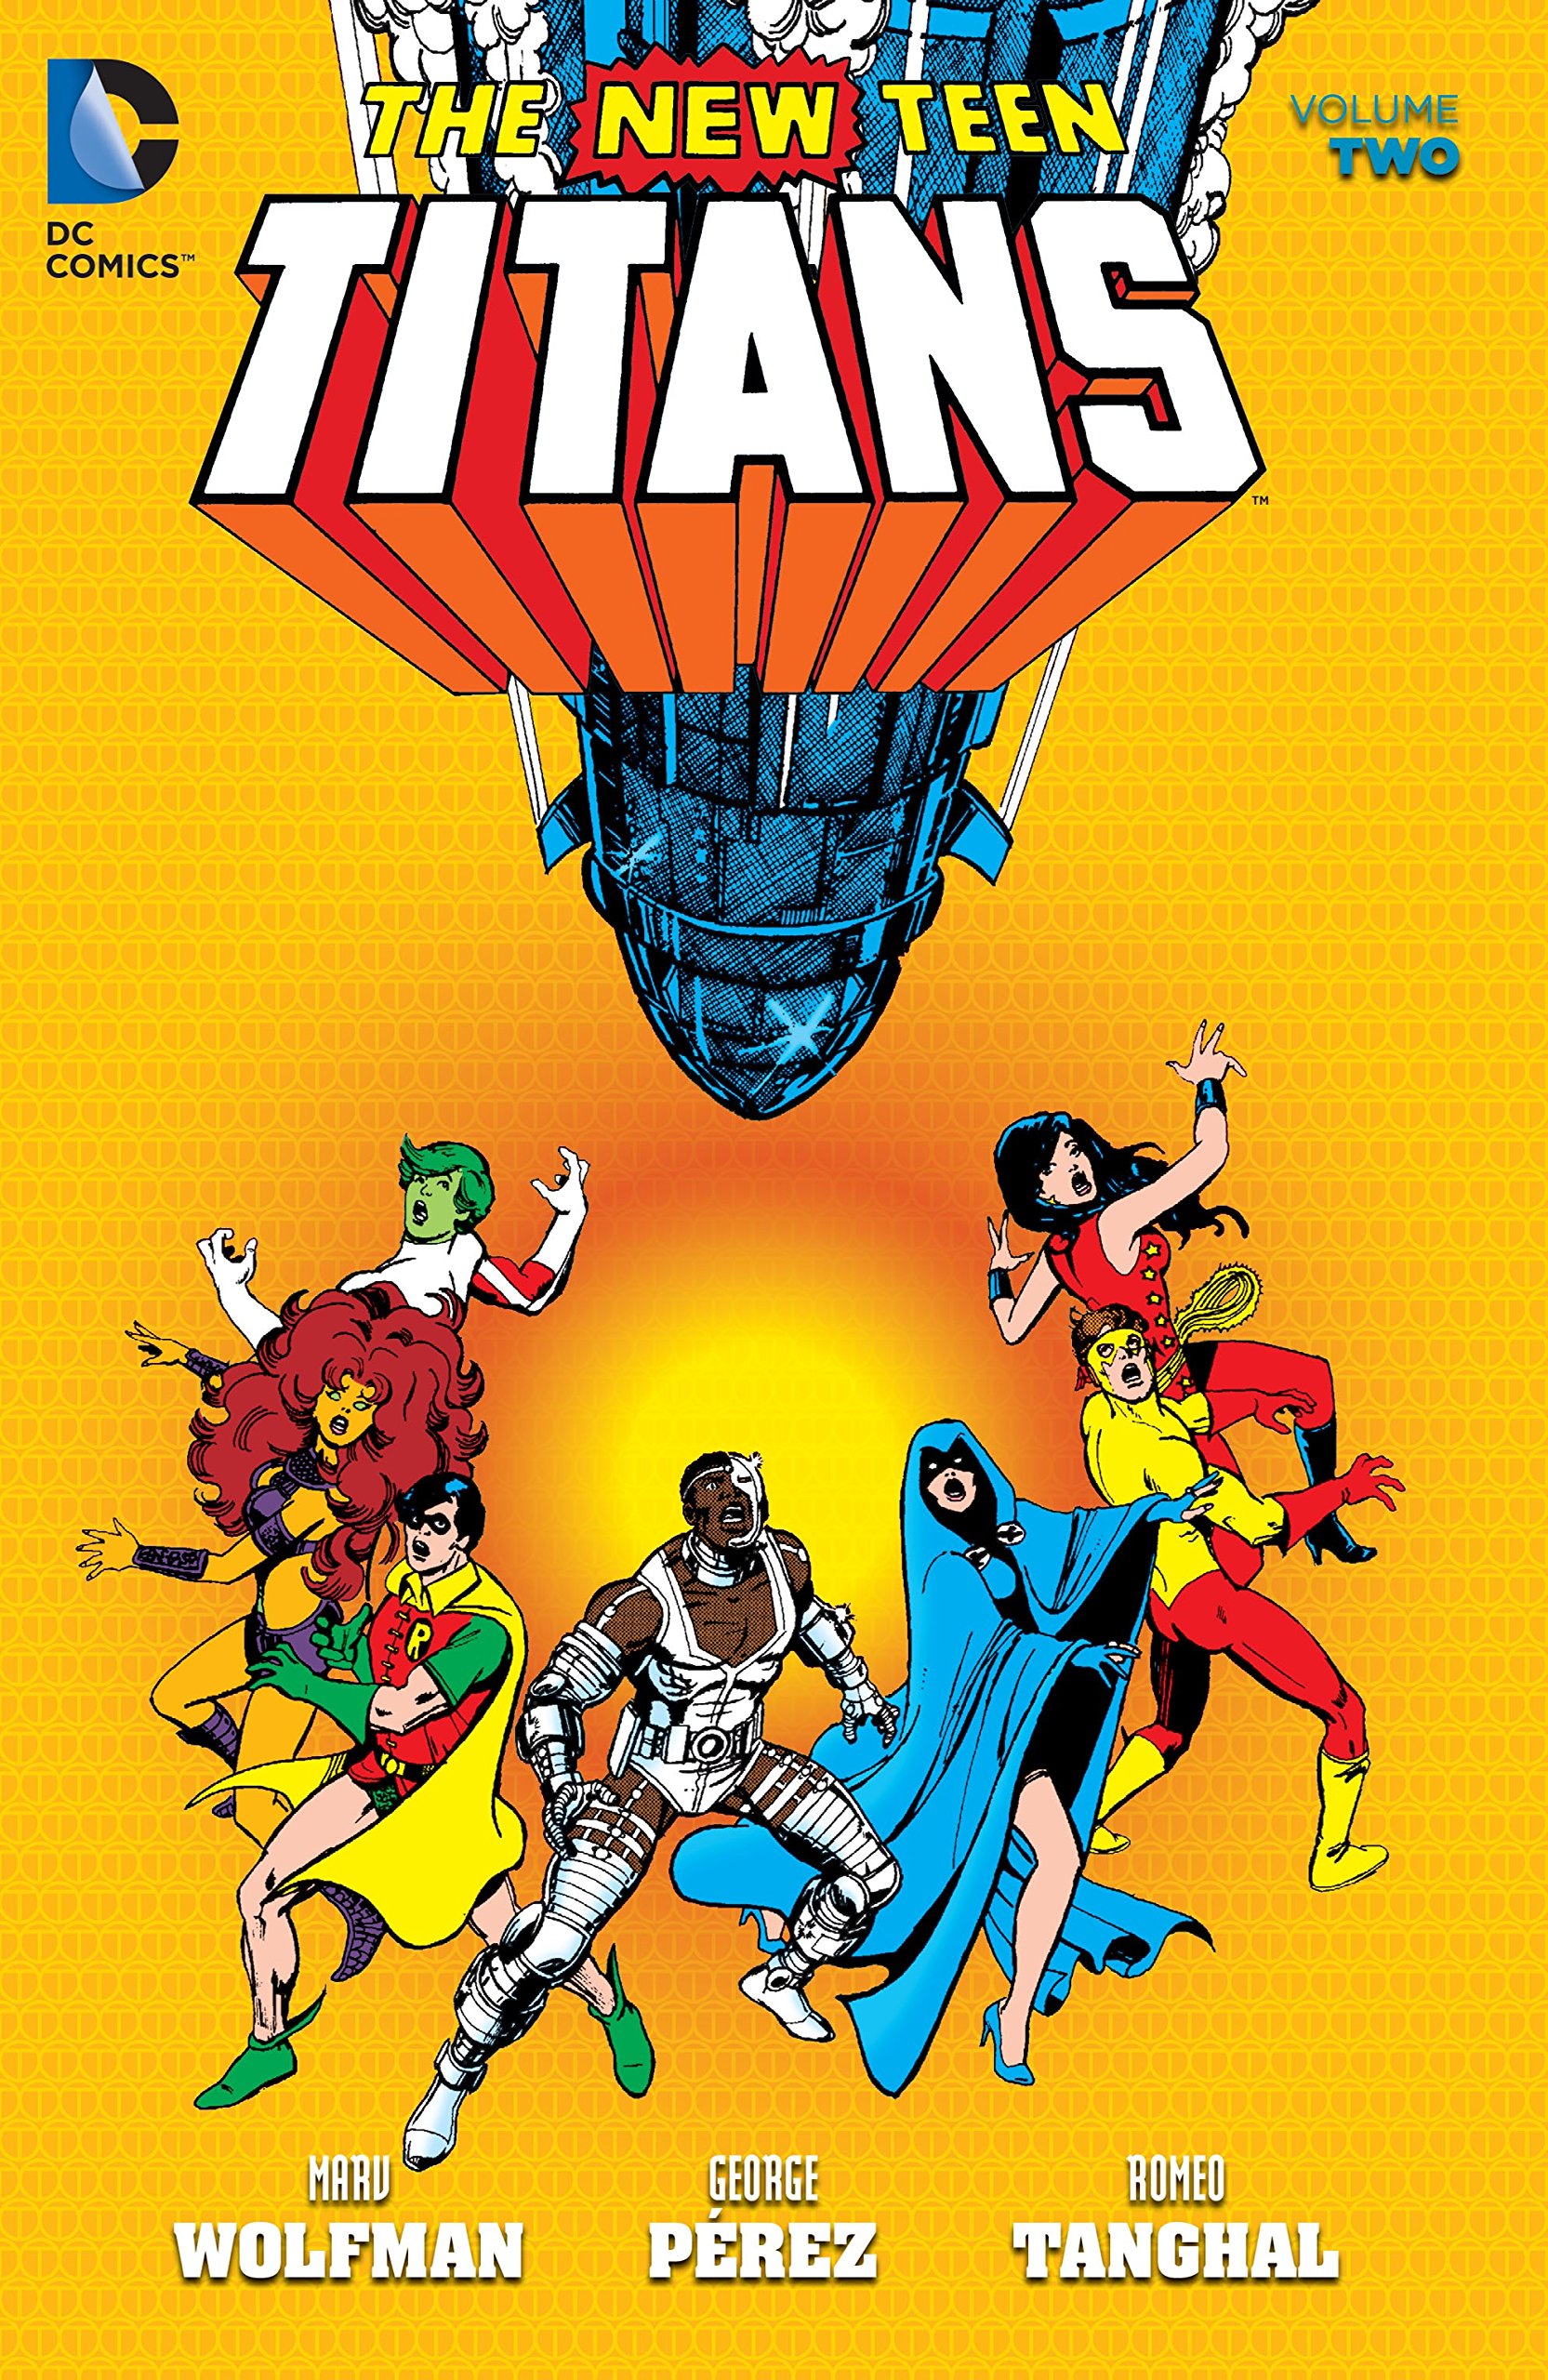 New Teen Titans (1980-1988) Vol. 2 (The New Teen Titans Graphic Novel)